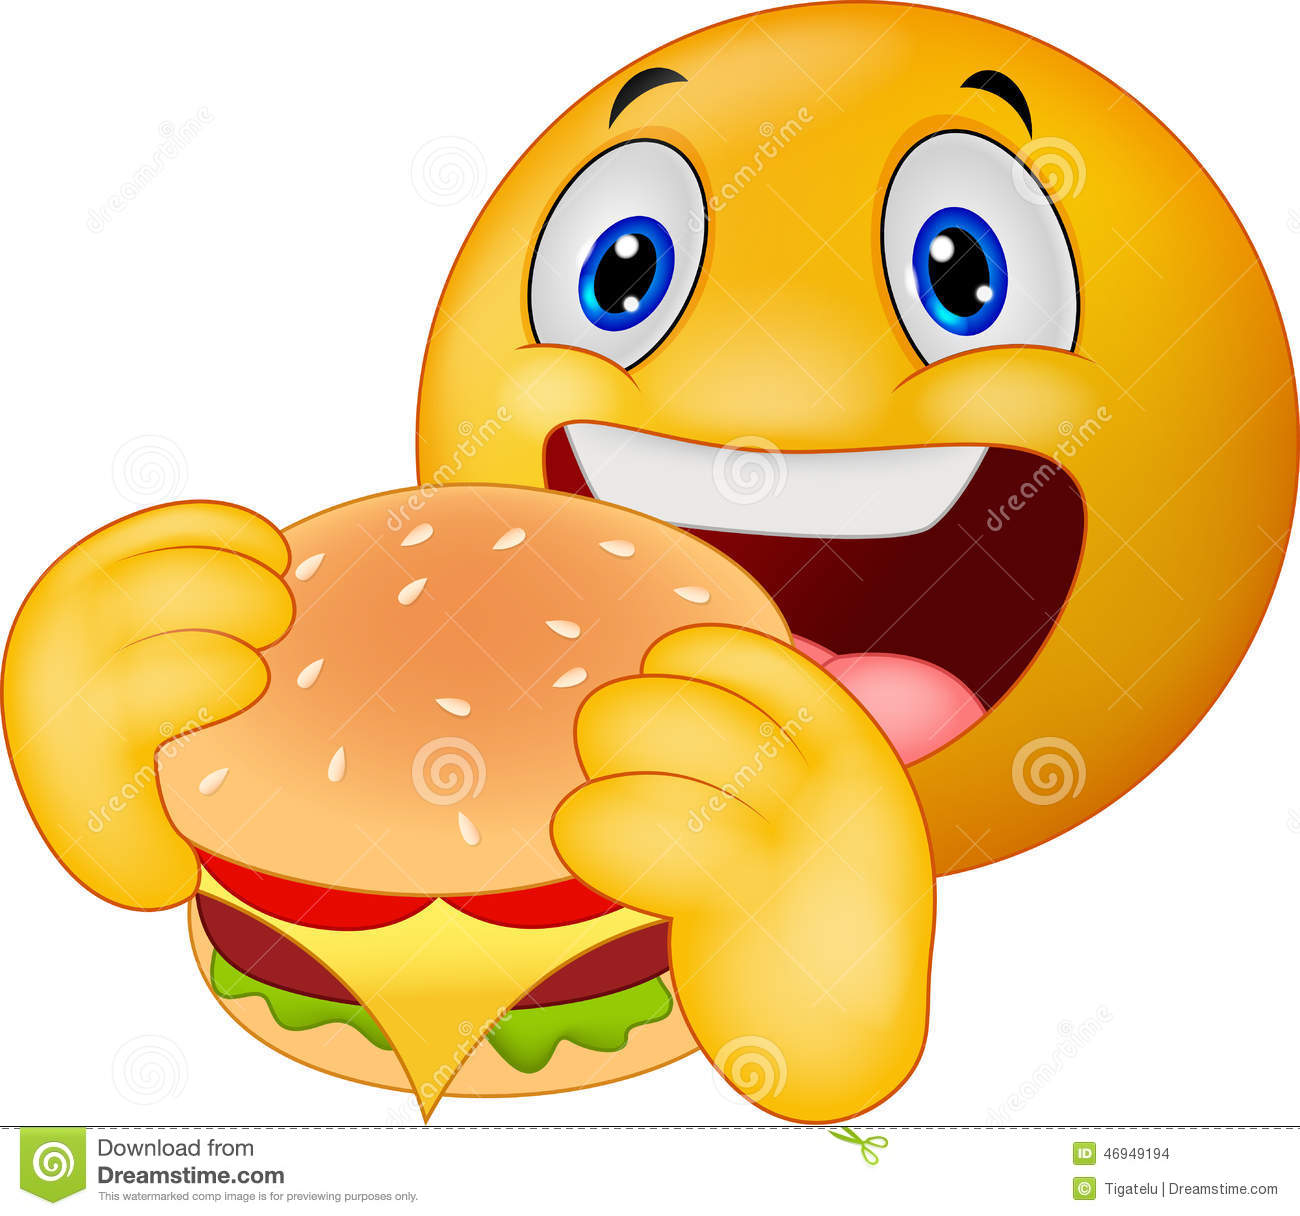 Emoticon Smiley-Face Eating a Burger